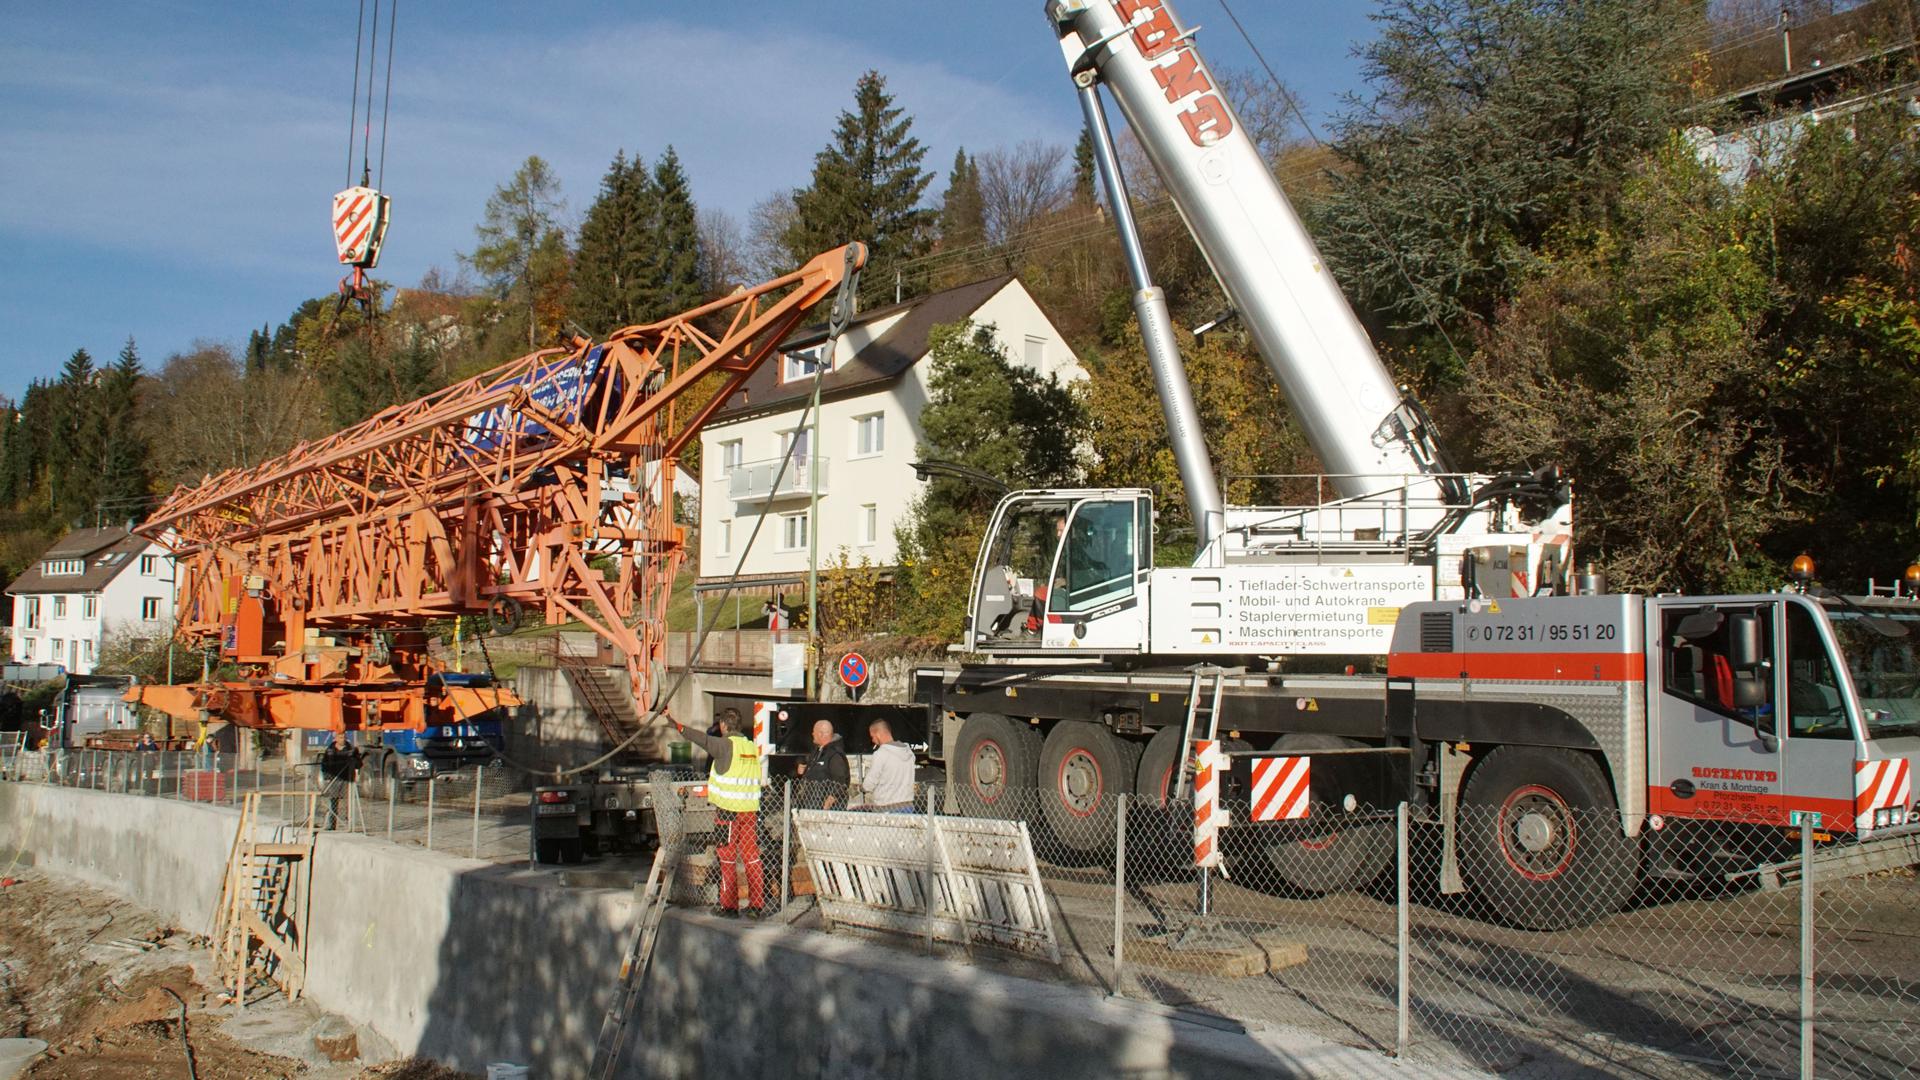 Kran hebt Kran: Der mobile 100-Tonner hebt ein Teilstück des Baukrans in die Luft. Für den Aufbau wurde die Alte Pforzheimer Straße gesperrt.